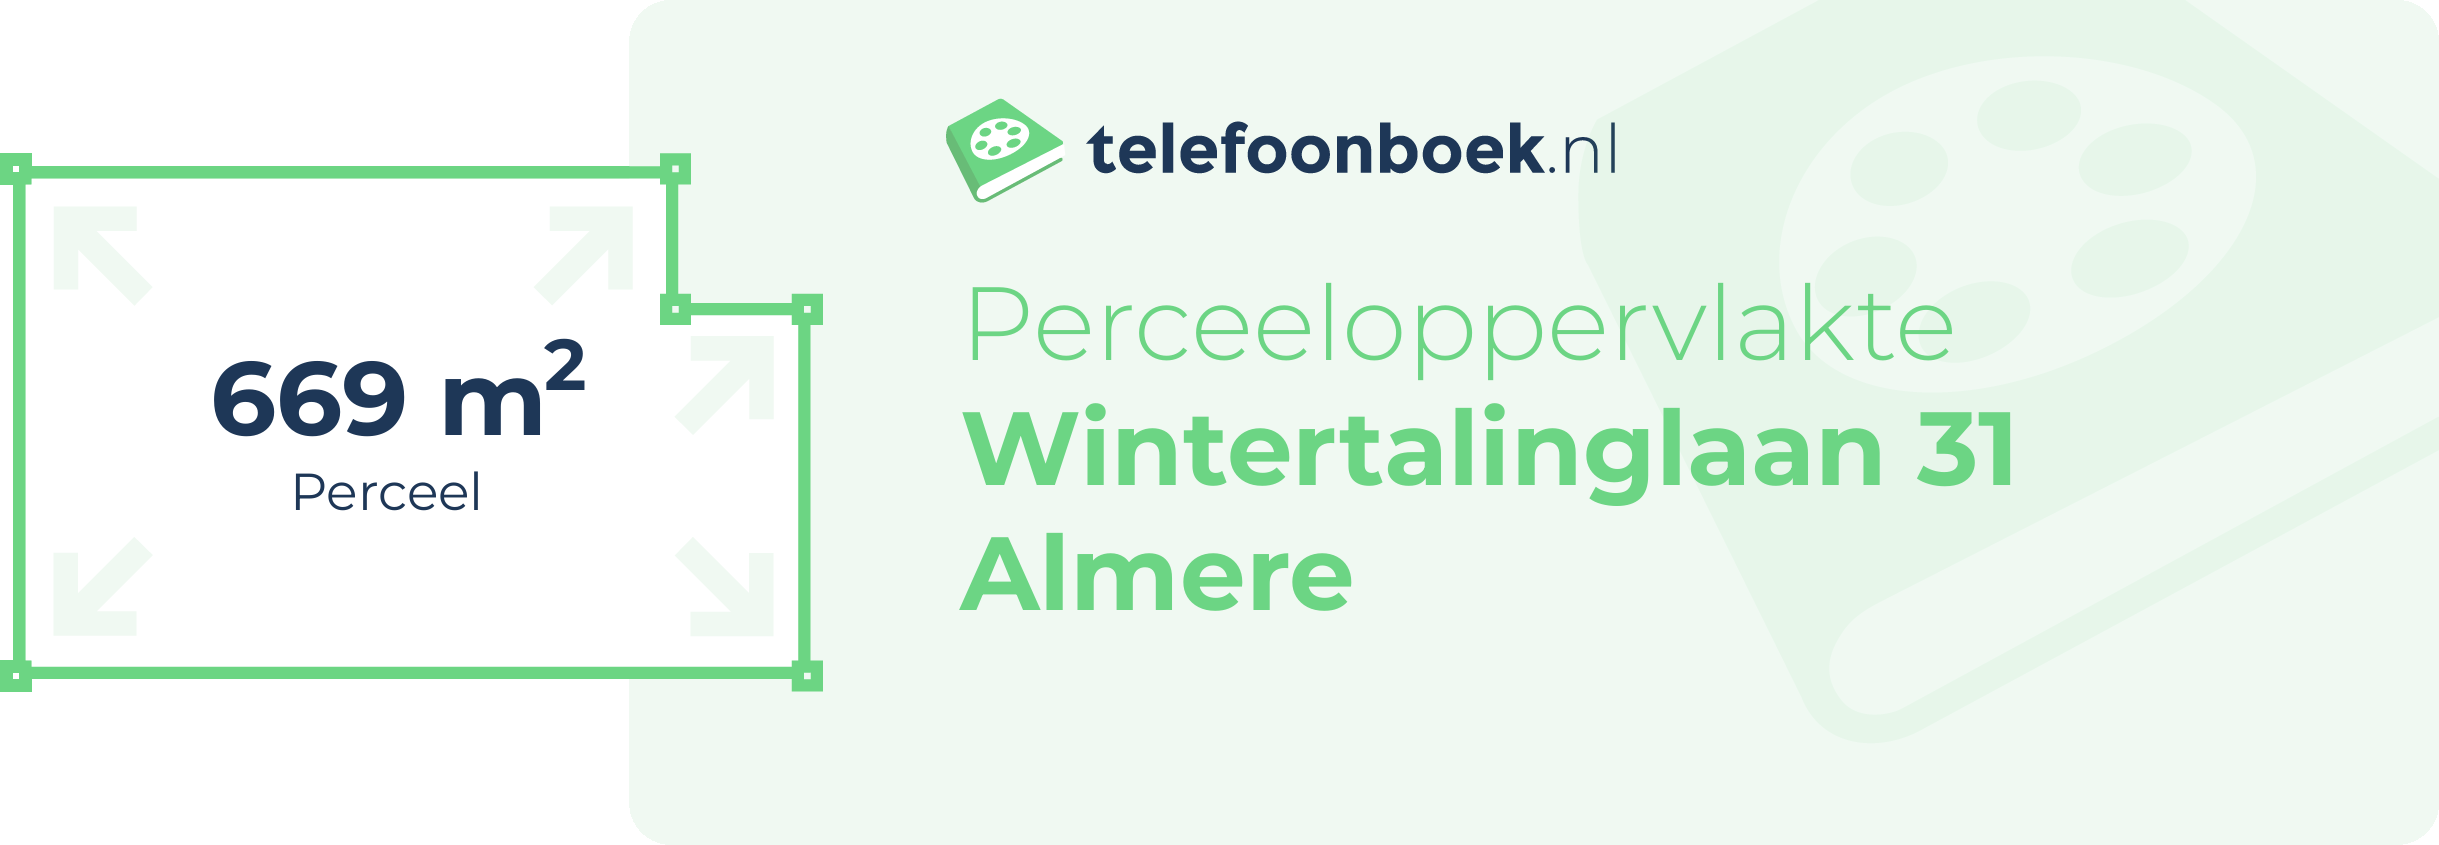 Perceeloppervlakte Wintertalinglaan 31 Almere